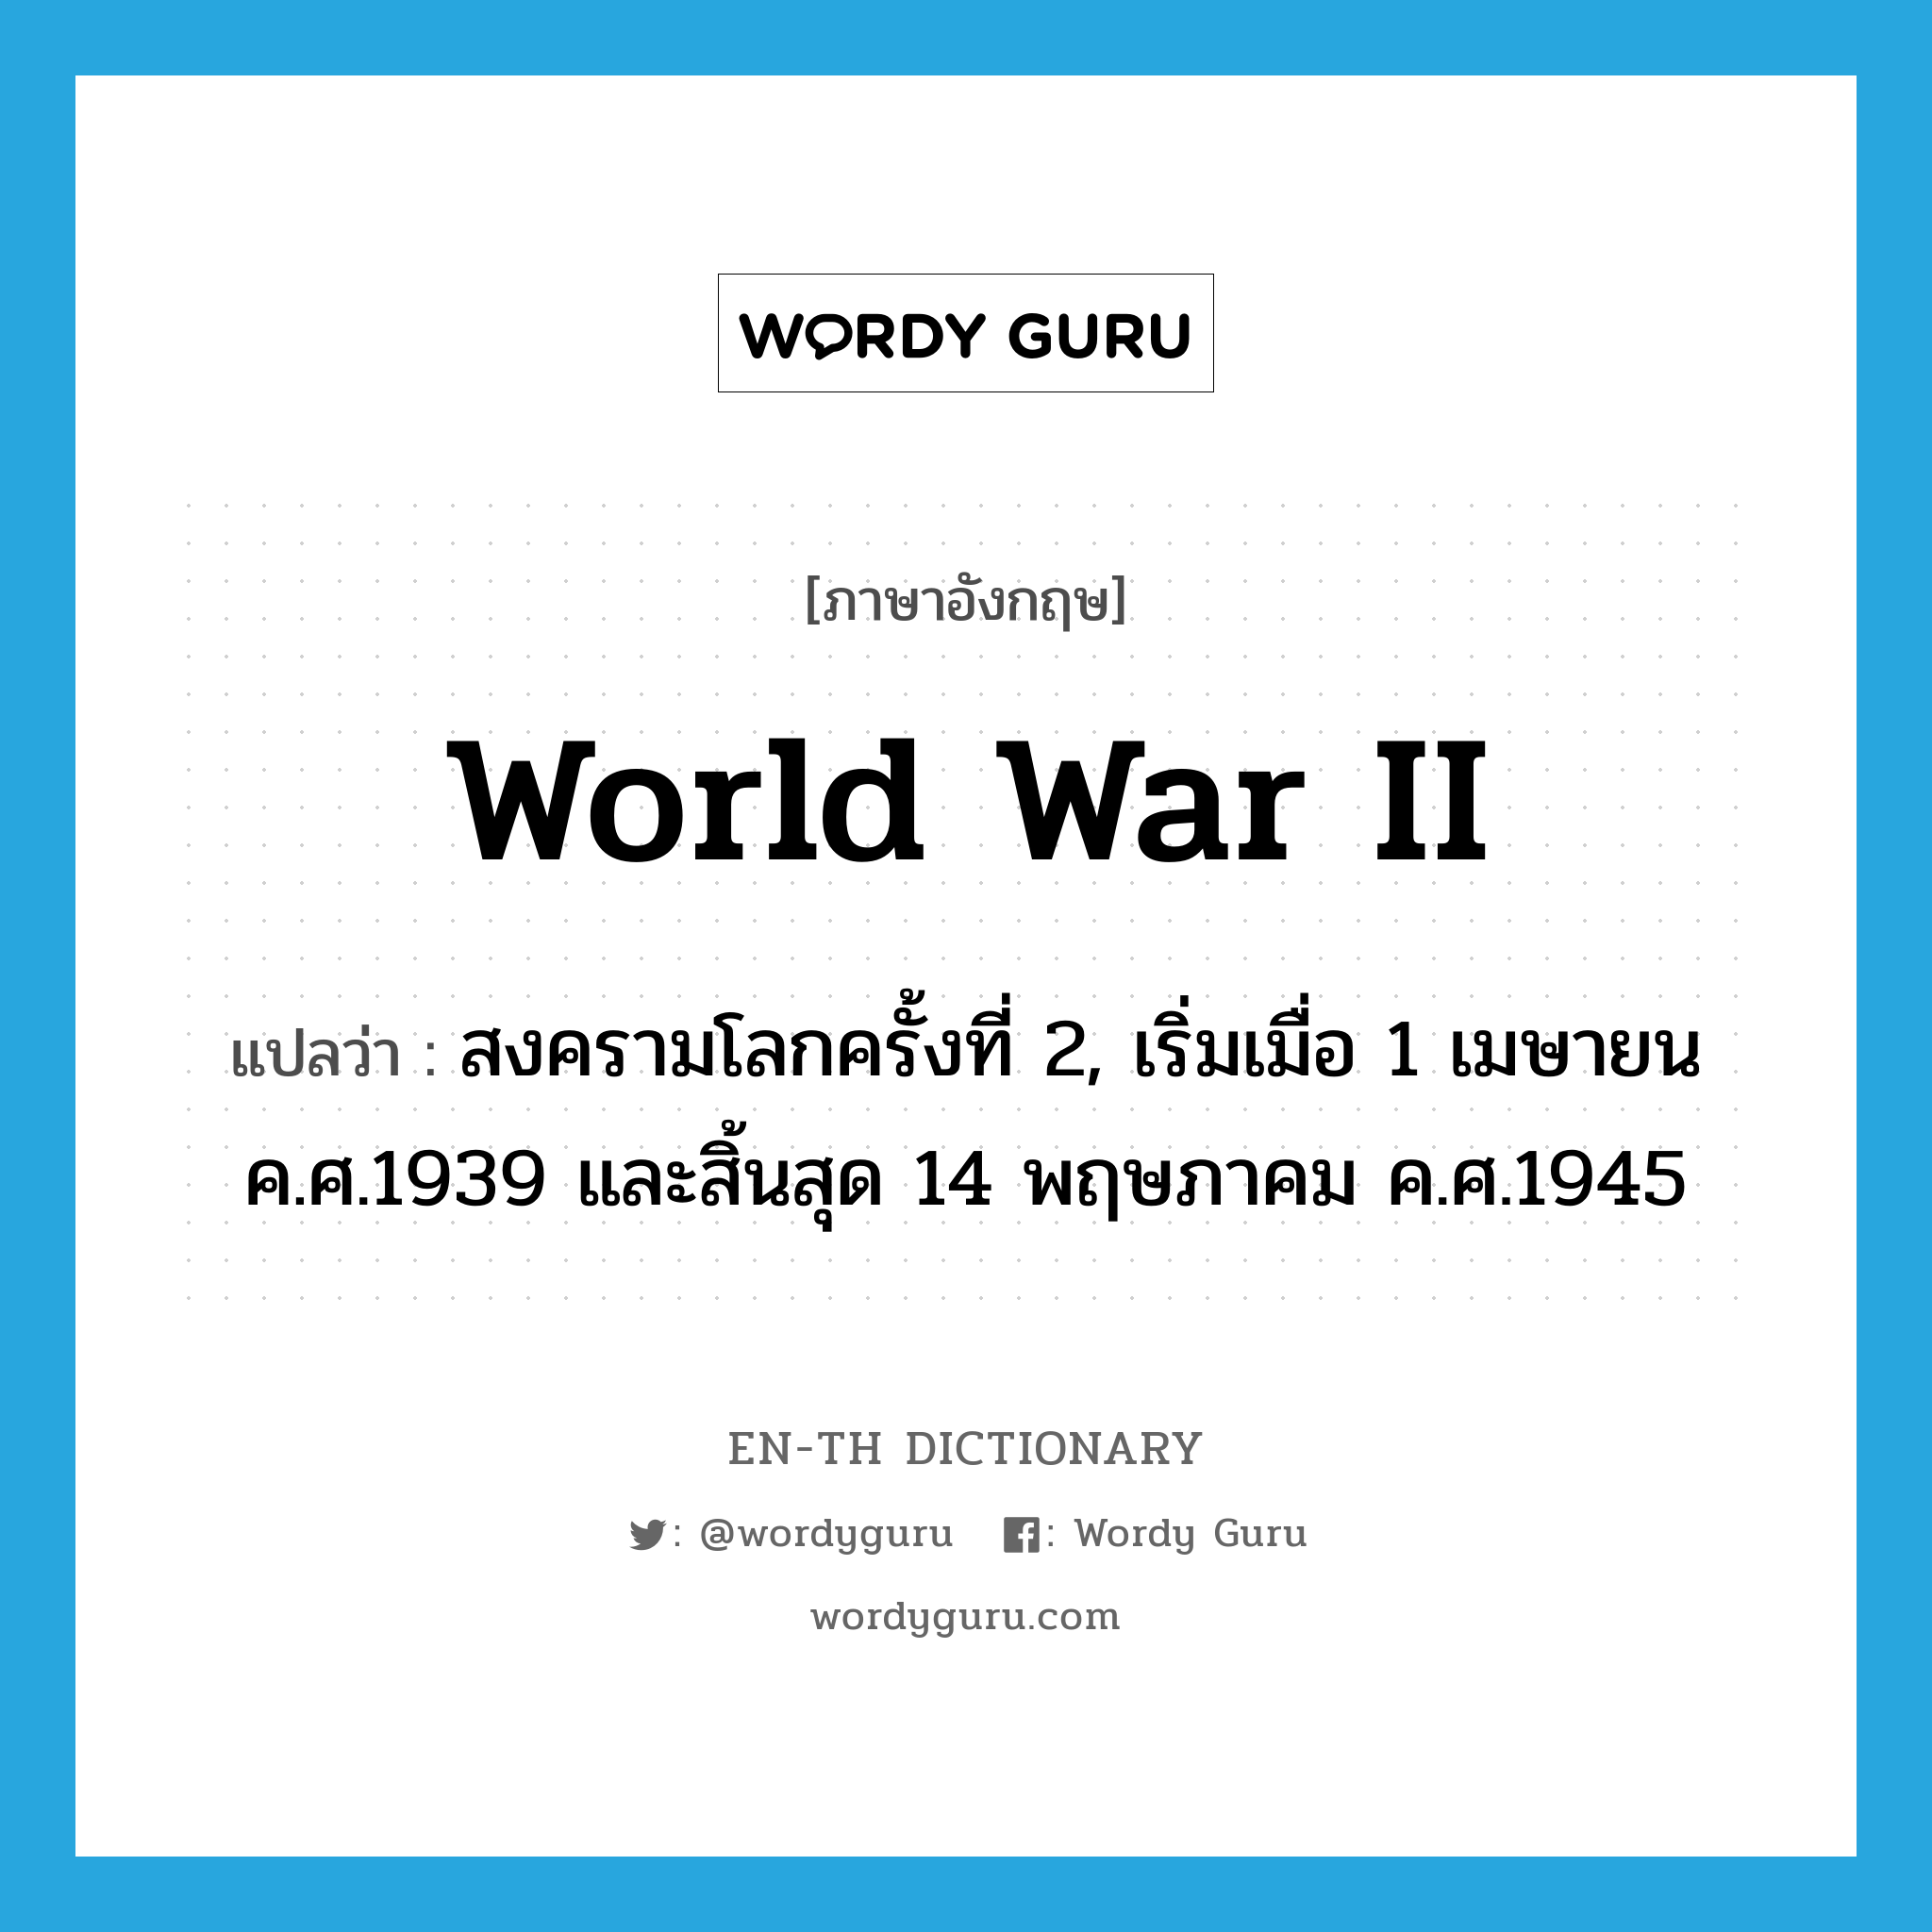 สงครามโลกครั้งที่ 2, เริ่มเมื่อ 1 เมษายน ค.ศ.1939 และสิ้นสุด 14 พฤษภาคม ค.ศ.1945 ภาษาอังกฤษ?, คำศัพท์ภาษาอังกฤษ สงครามโลกครั้งที่ 2, เริ่มเมื่อ 1 เมษายน ค.ศ.1939 และสิ้นสุด 14 พฤษภาคม ค.ศ.1945 แปลว่า World War II ประเภท N หมวด N